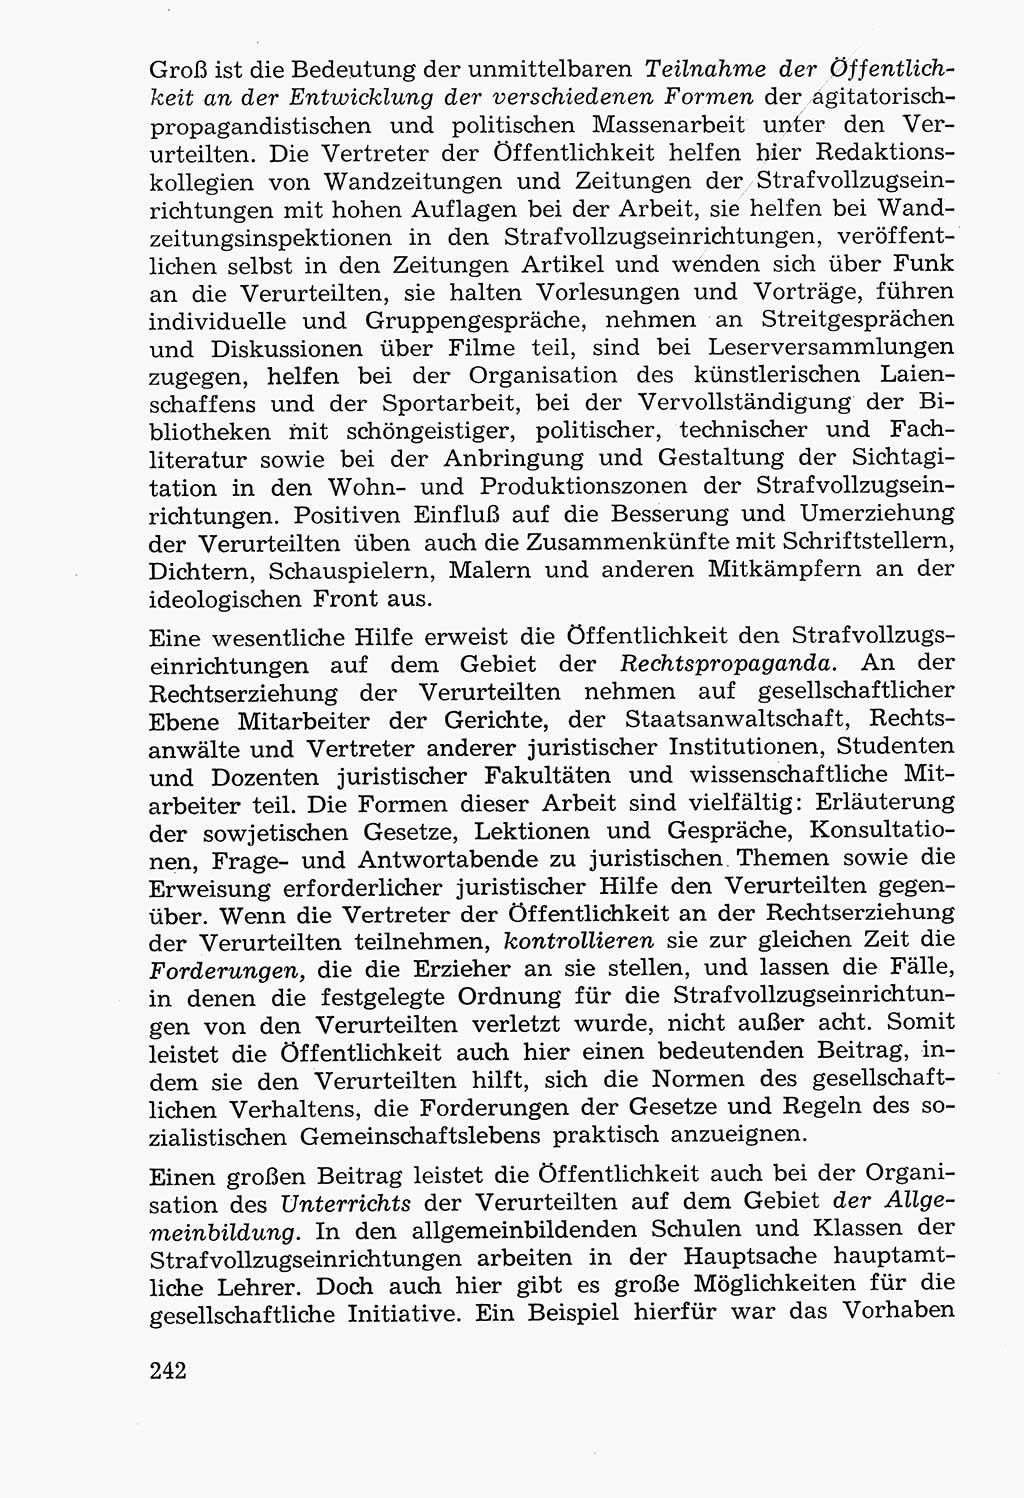 Lehrbuch der Strafvollzugspädagogik [Deutsche Demokratische Republik (DDR)] 1969, Seite 242 (Lb. SV-Pd. DDR 1969, S. 242)